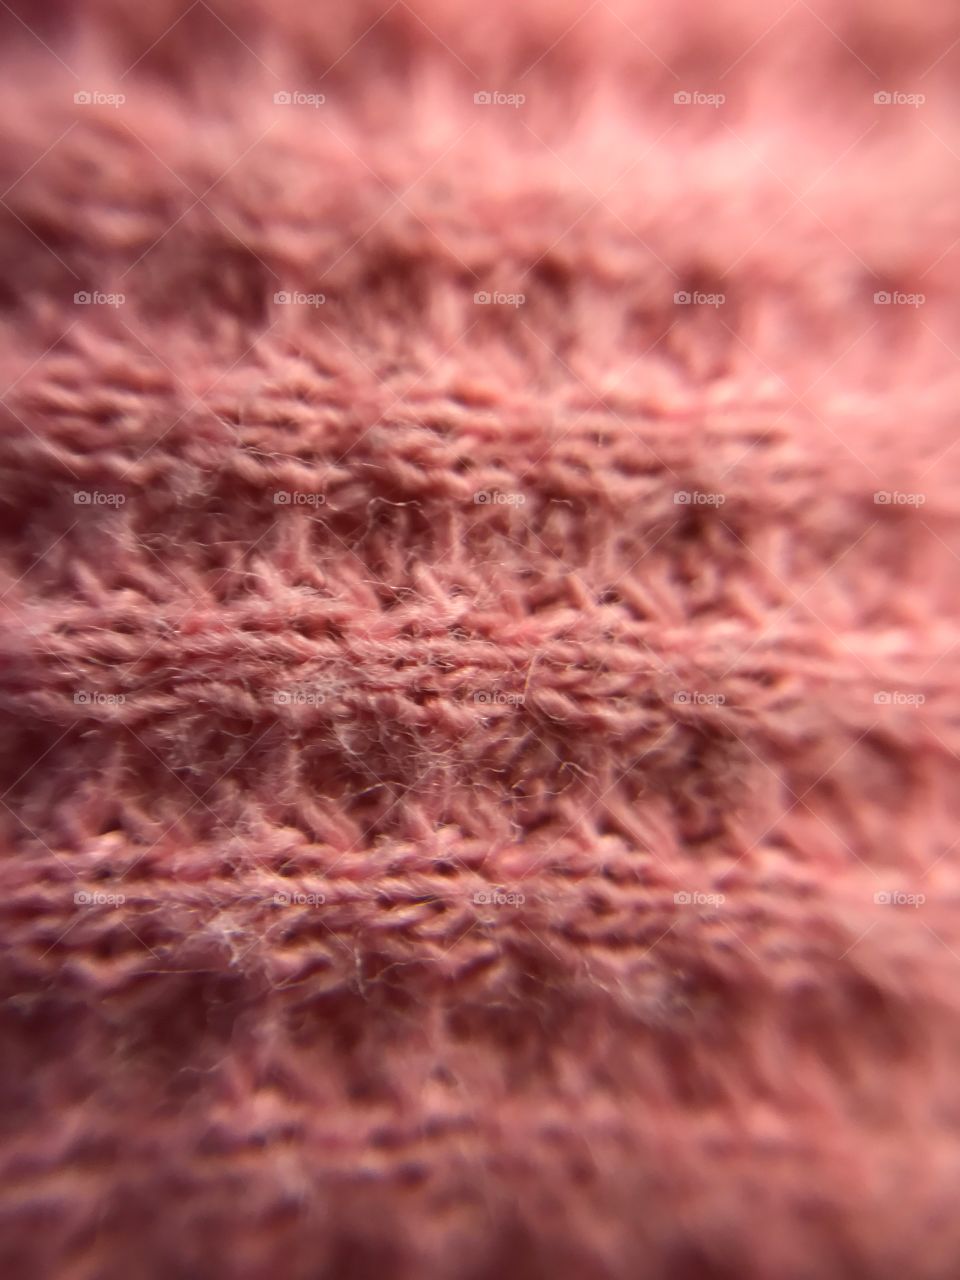 Close-up pink fabric